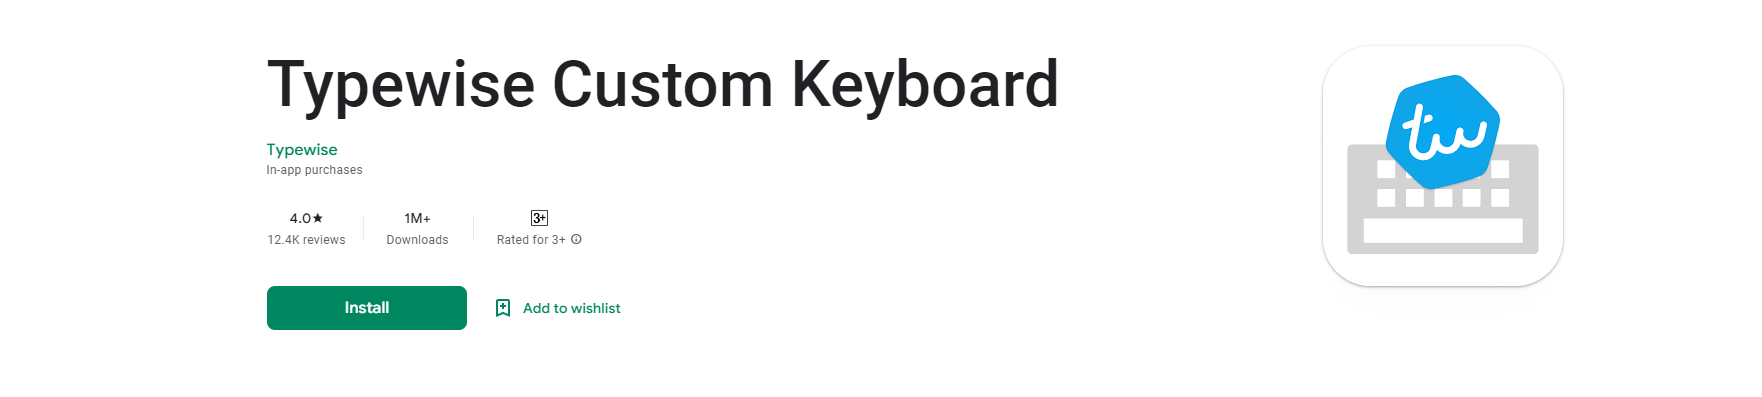 Typewise Keyboard